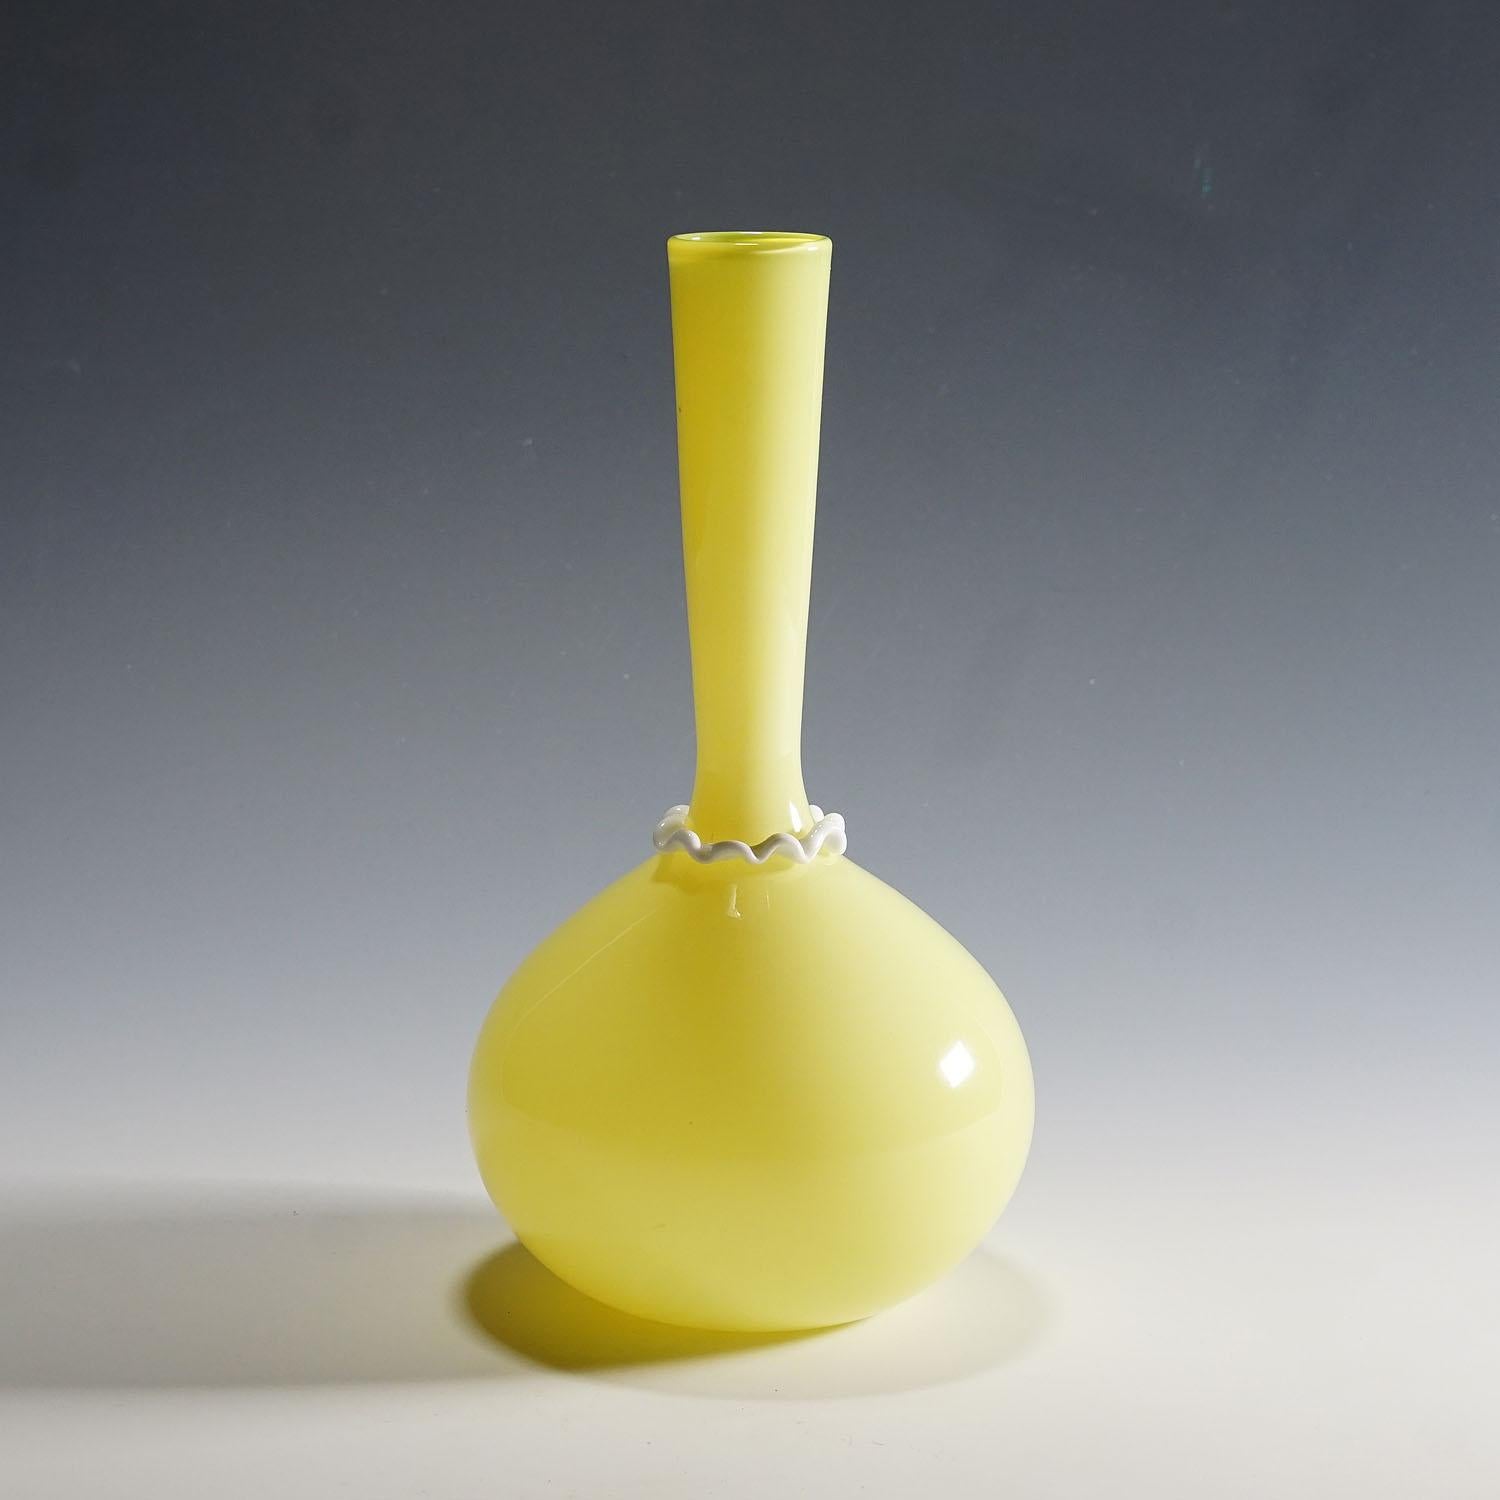 Vittorio Zecchin für Venini Soffiato, Vase aus gelbem und Lattimo-Glas, ca. 1950er Jahre

Venini soffiato (mundgeblasene) Glasvase mit sehr dünnem, gelbem, opakem Glas, Klarglasüberfang und einem eingeklemmten Ring aus Lattimo-Glas (Milchglas) am